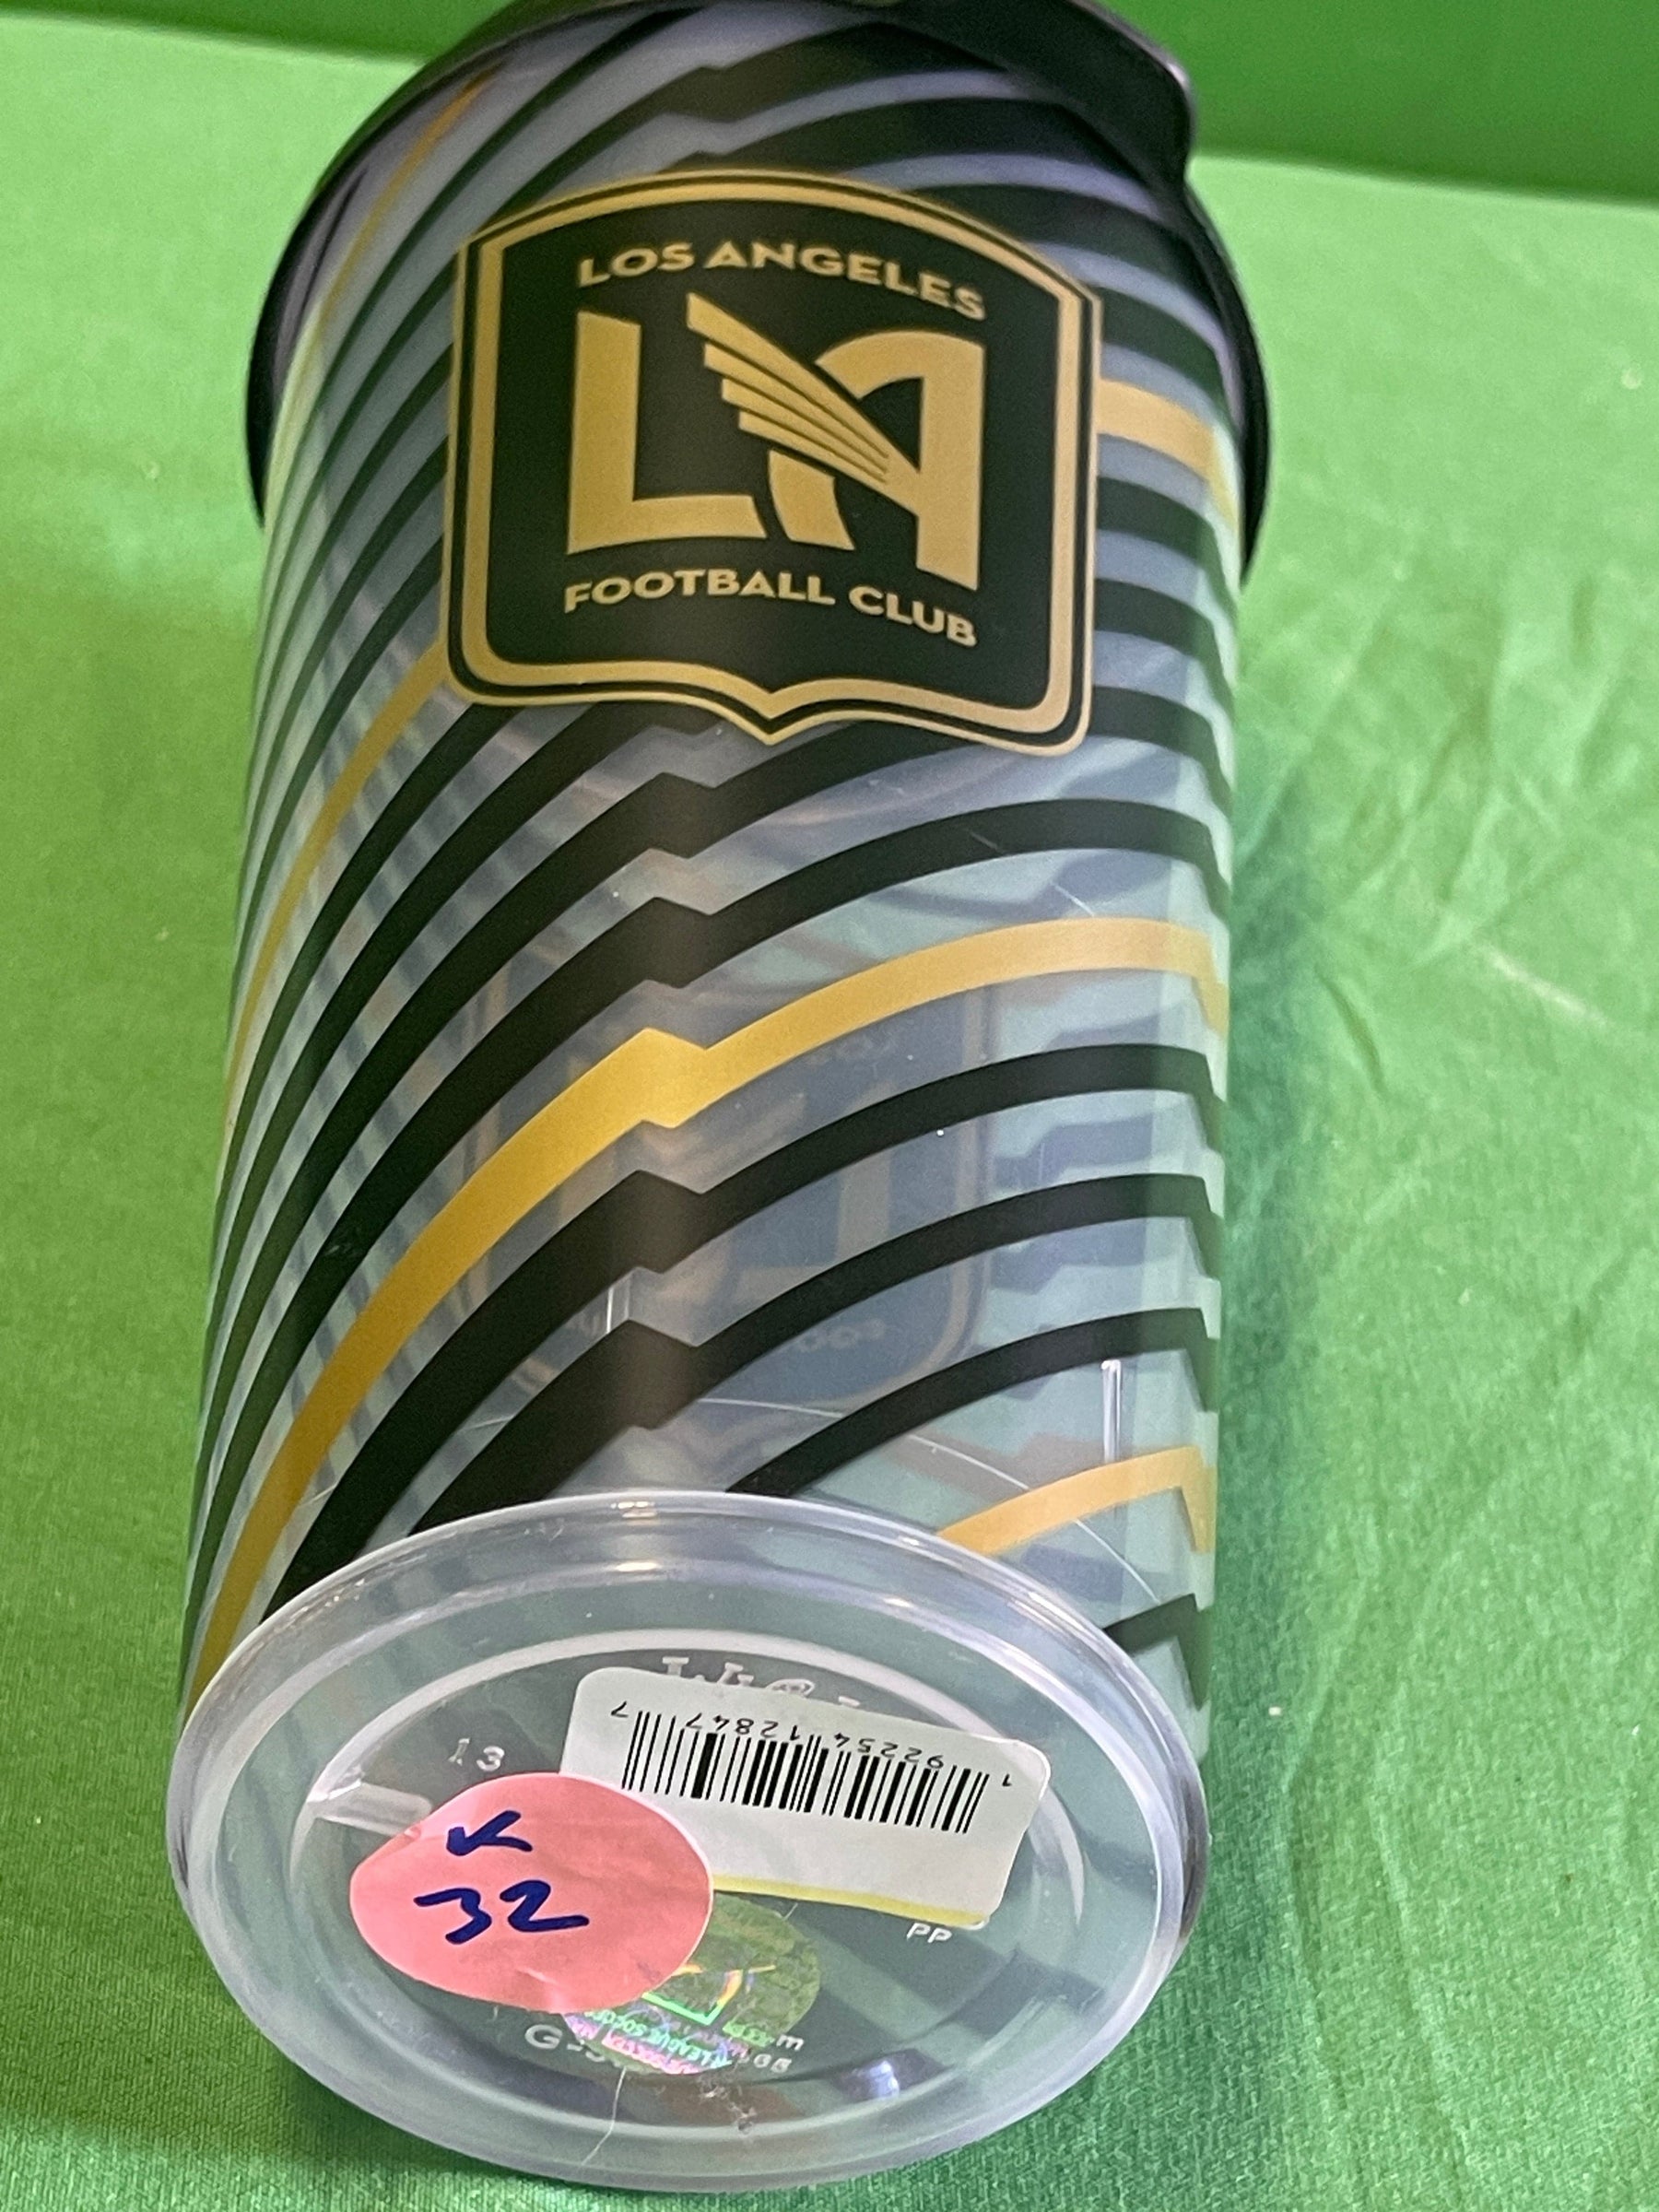 MLS Los Angeles FC Football Club 32 oz Plastic Tumbler w/Lid NWT